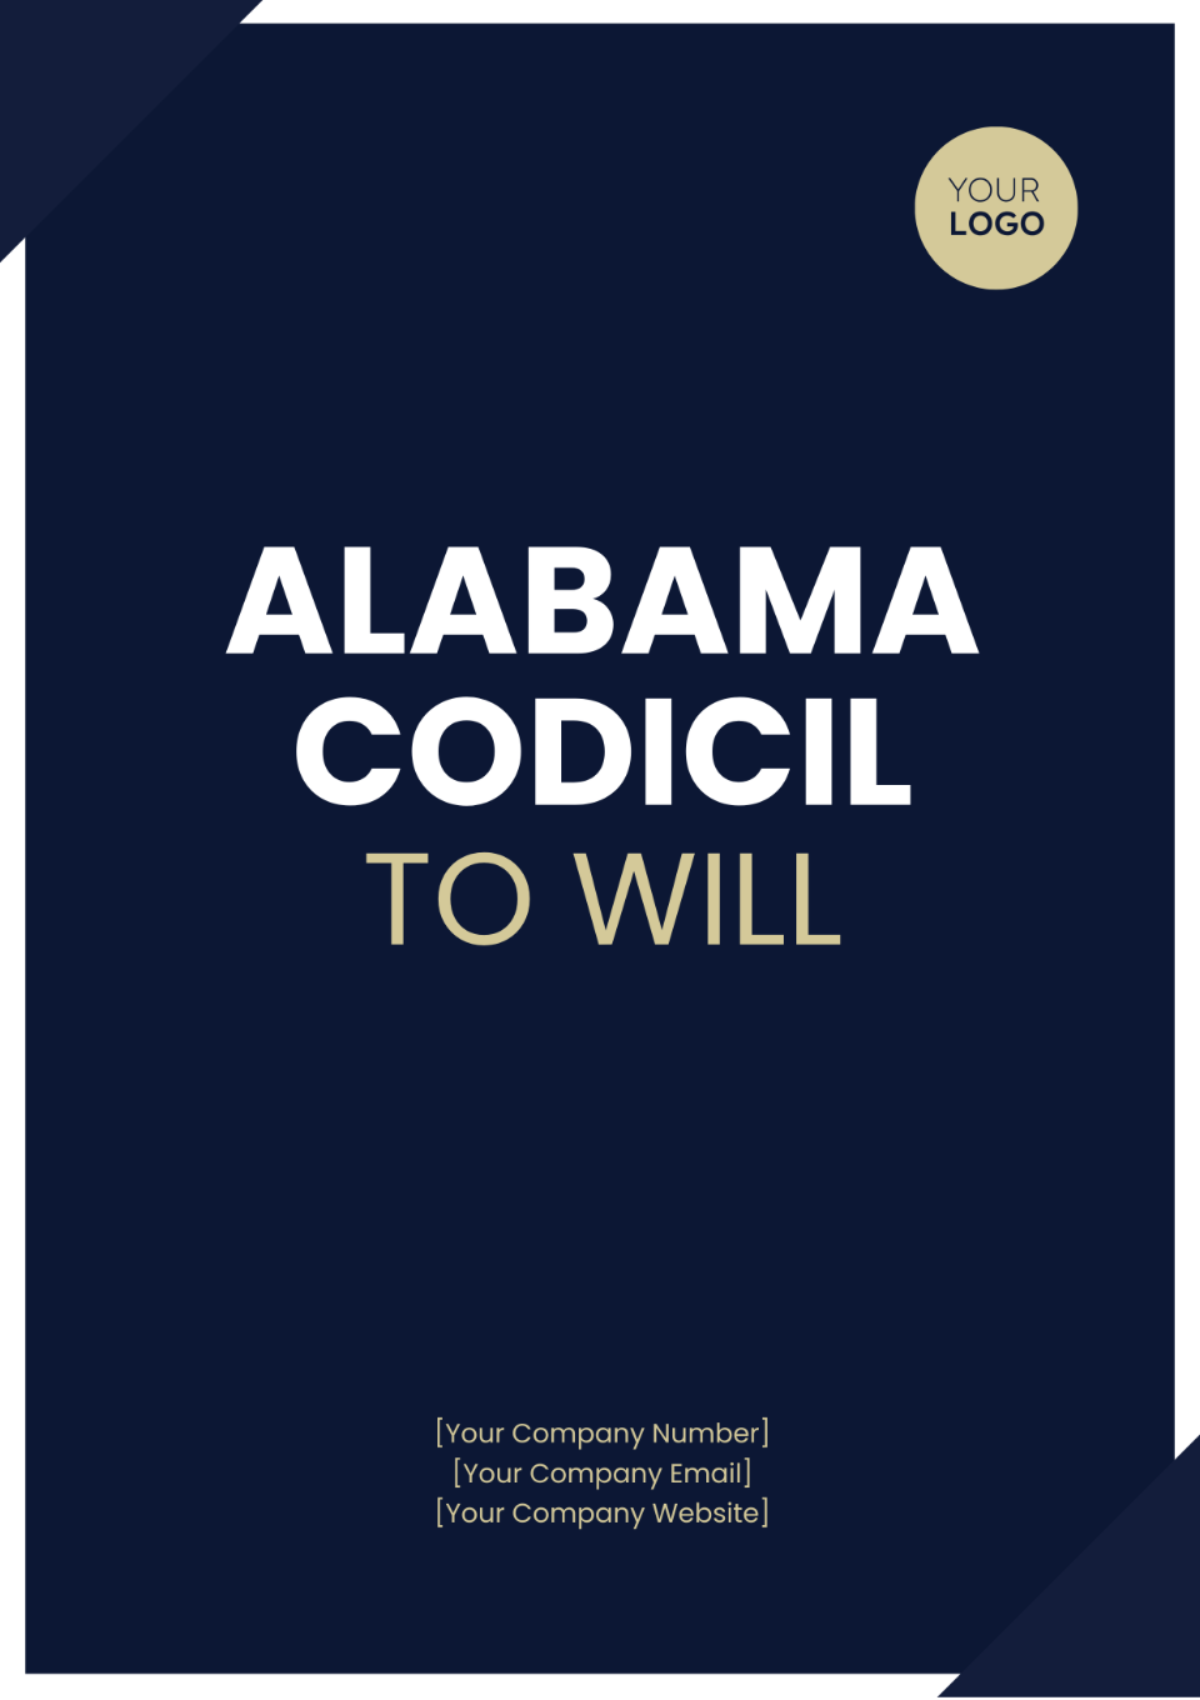 Alabama Codicil to Will Template